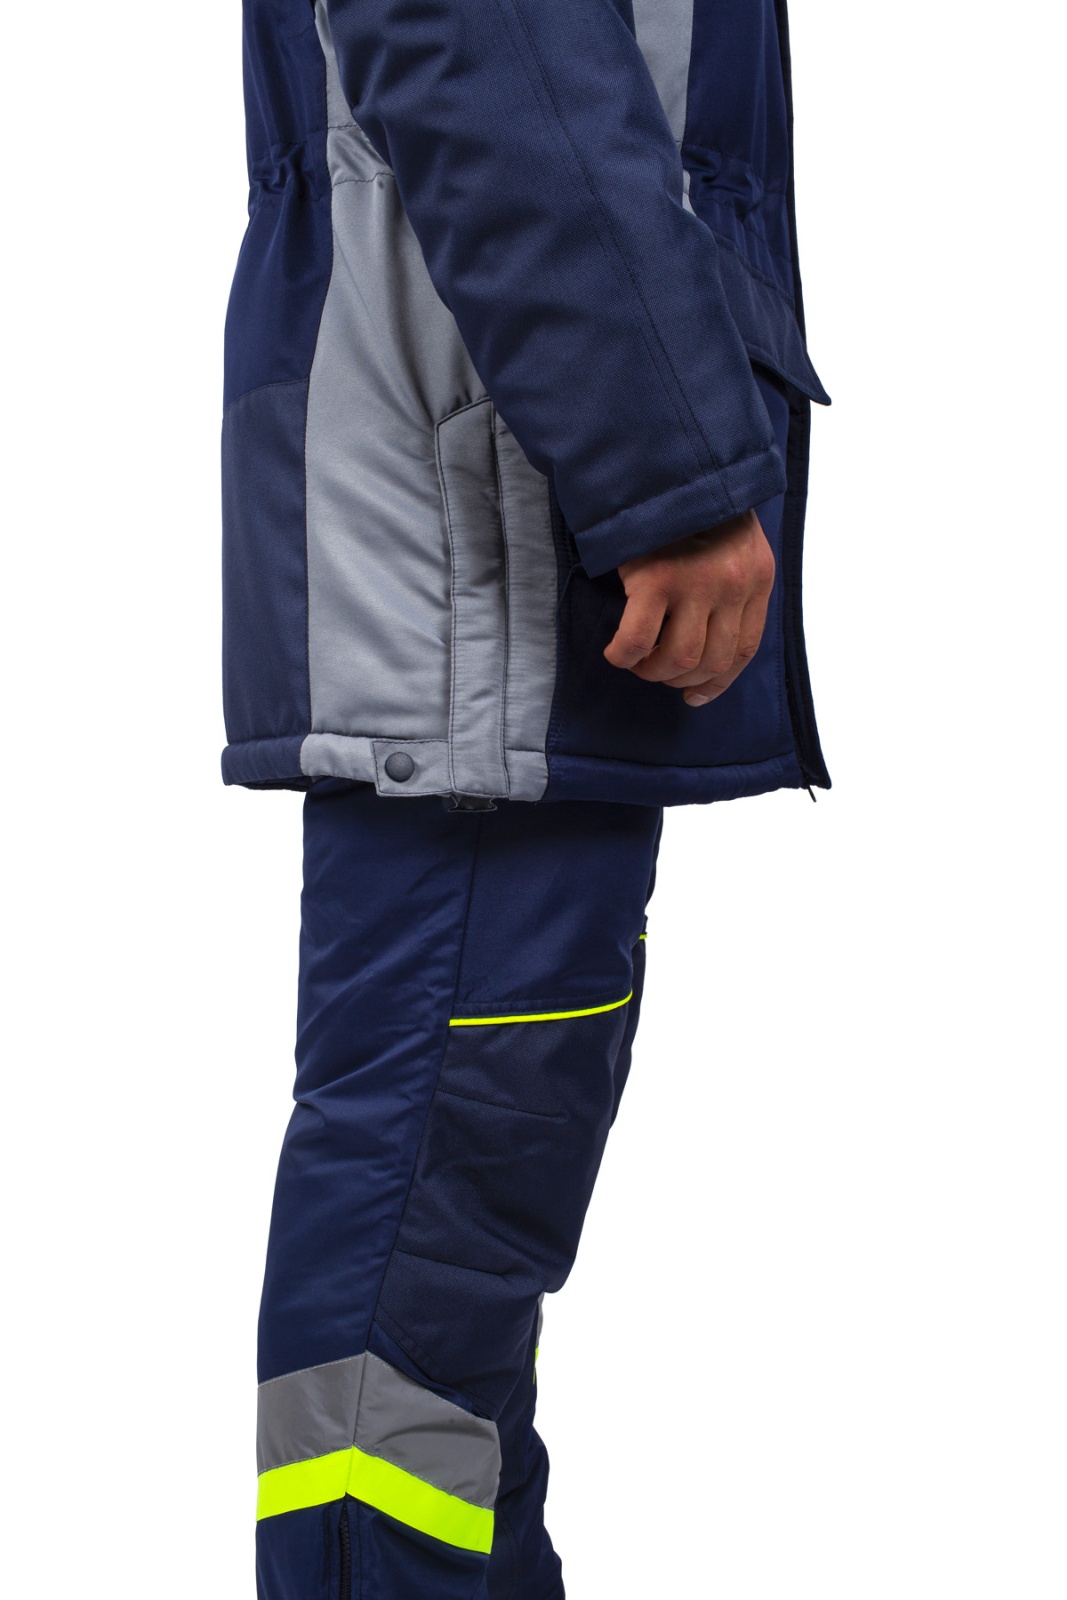 Куртка зимняя мужская PROFLINE SPECIALIST, тк.Таслан,135, IV+Особый, серый/т.синий М